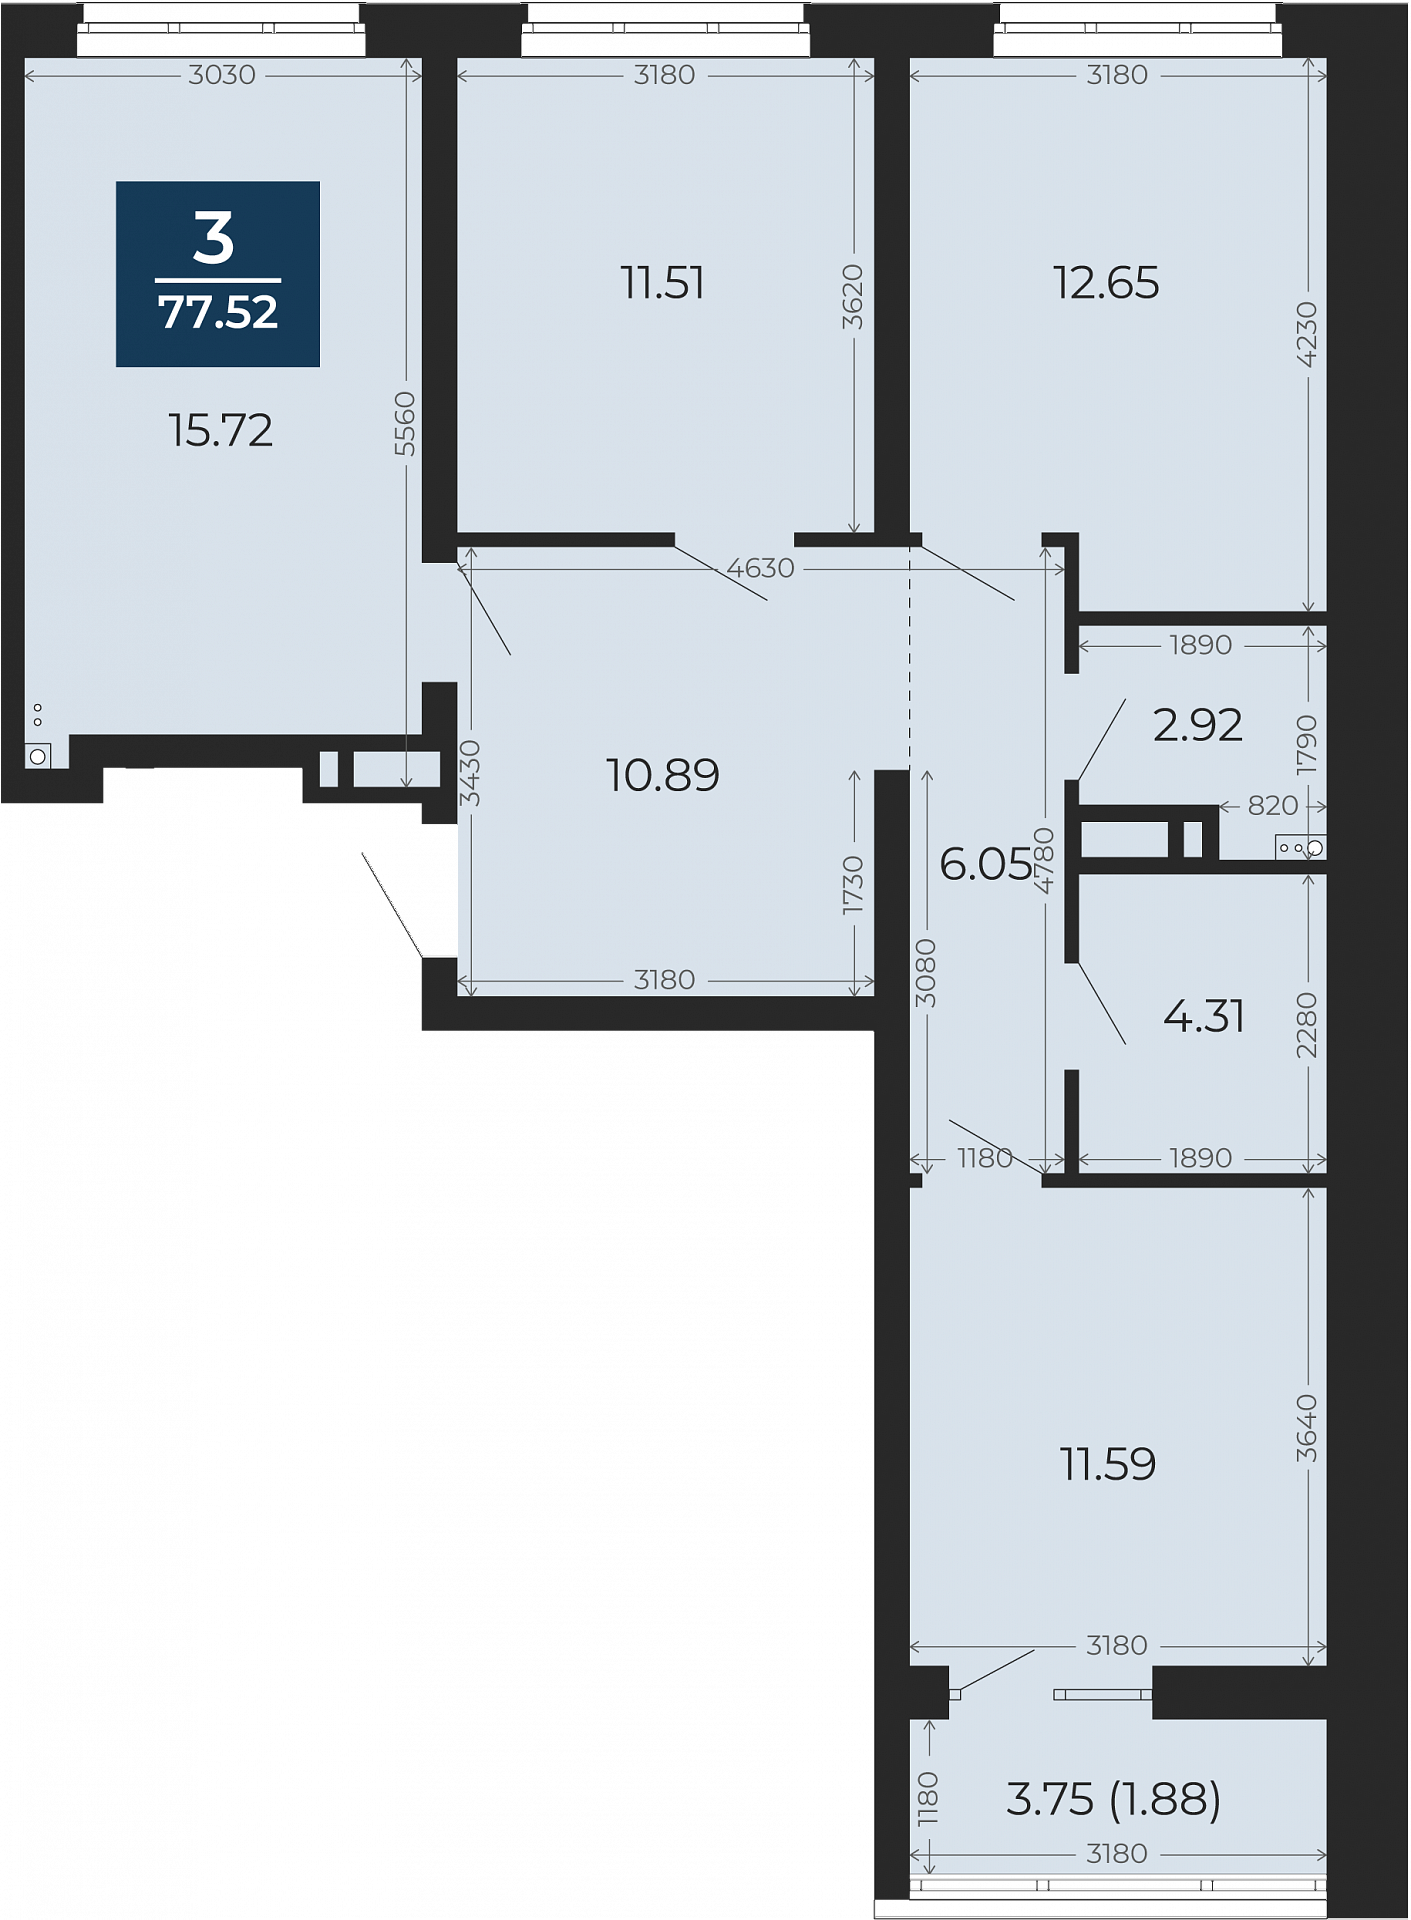 Квартира № 218, 3-комнатная, 77.52 кв. м, 8 этаж